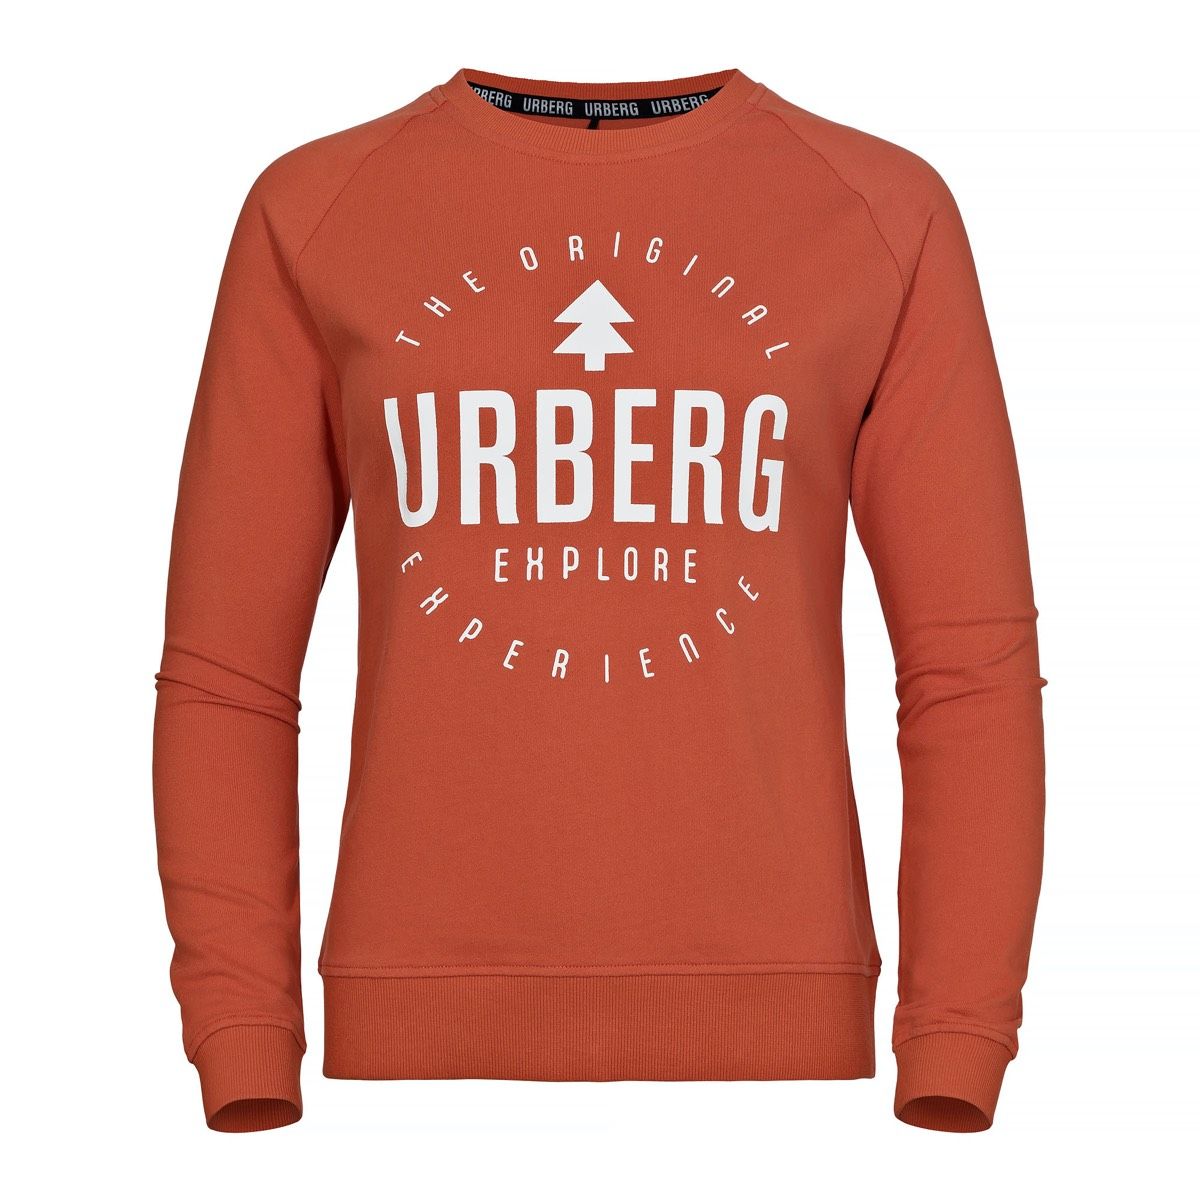 Urberg Logo Sweatshirt Women's Chili